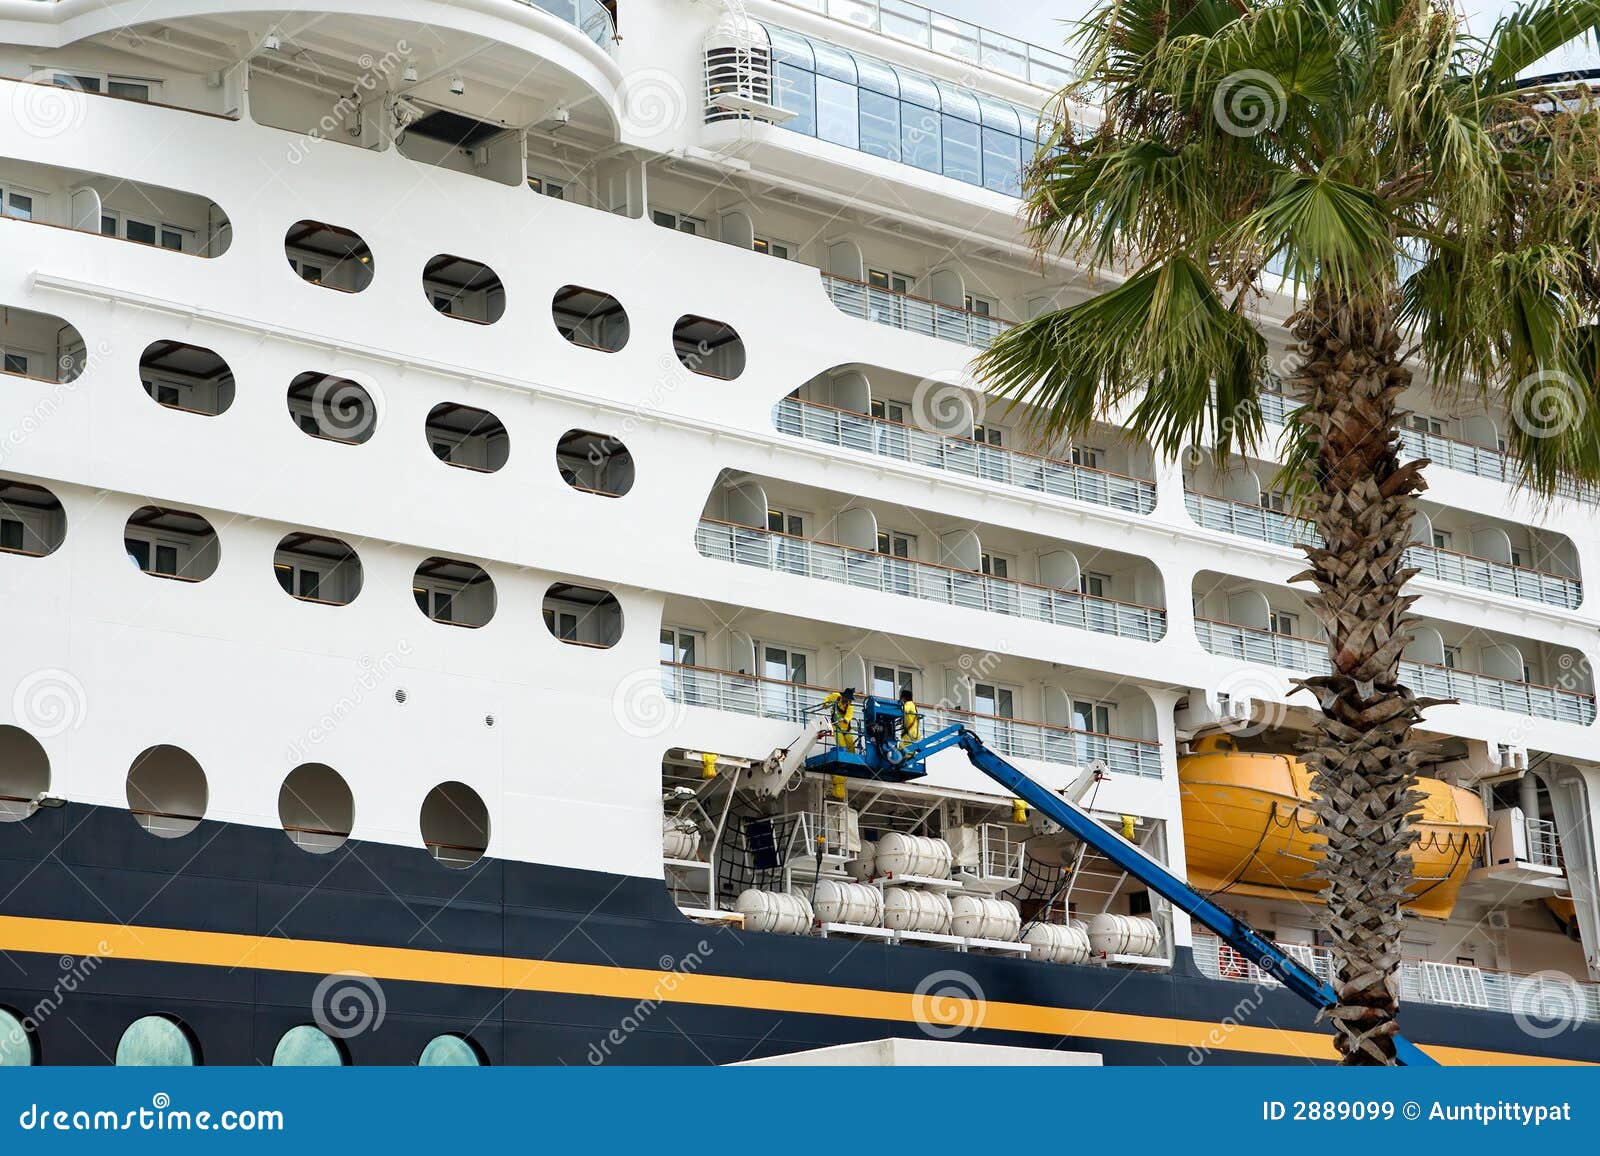 cruise ship repairs